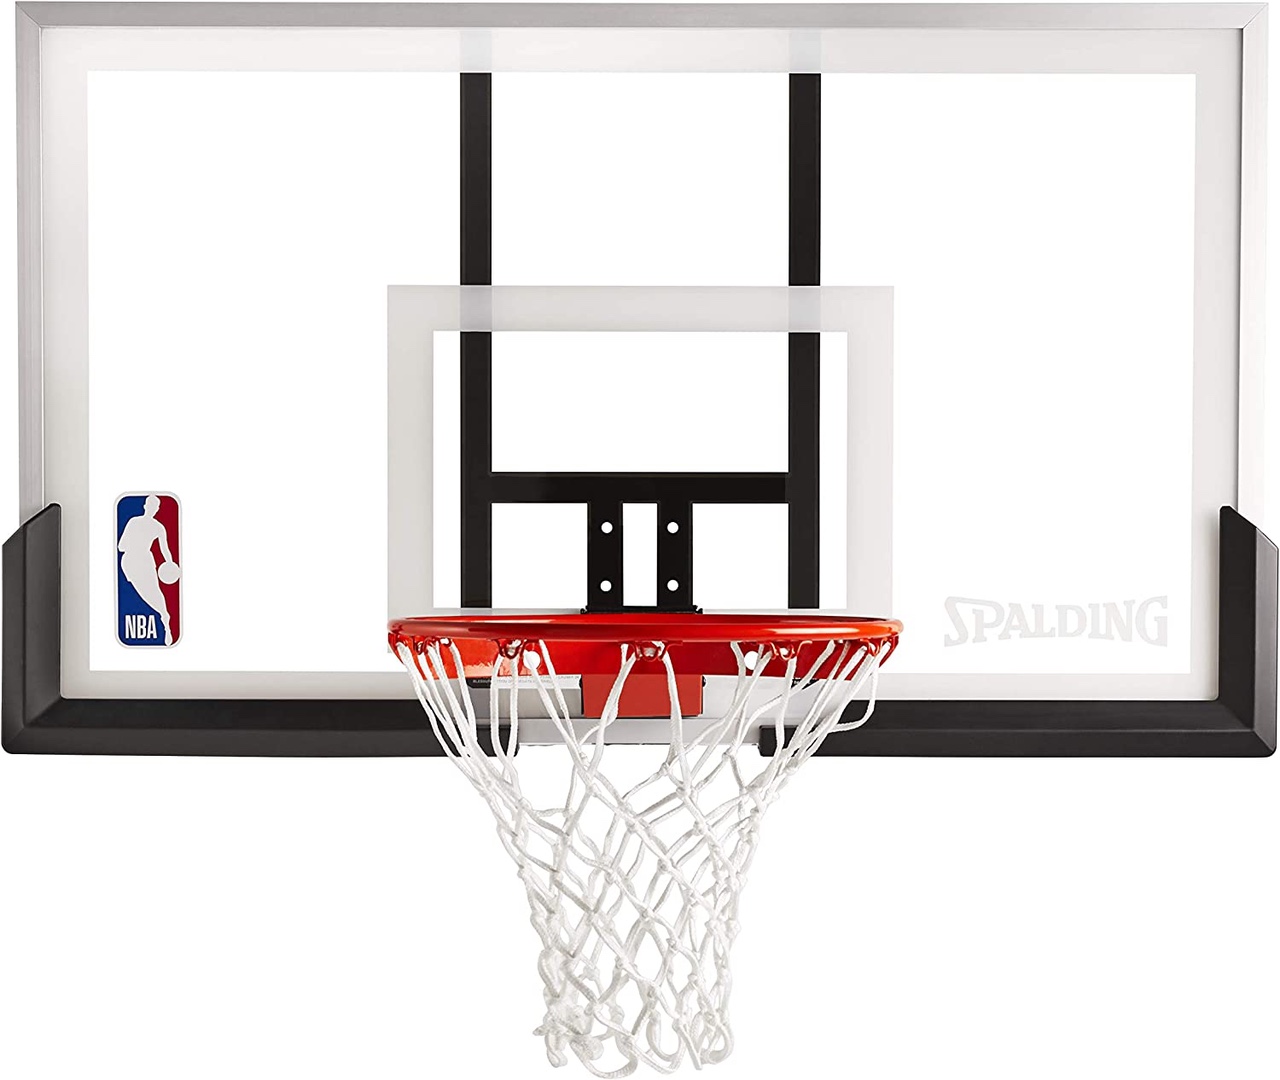 Tablero de basket basketball baloncesto nueva en acrilico con aro, malla y bola 0